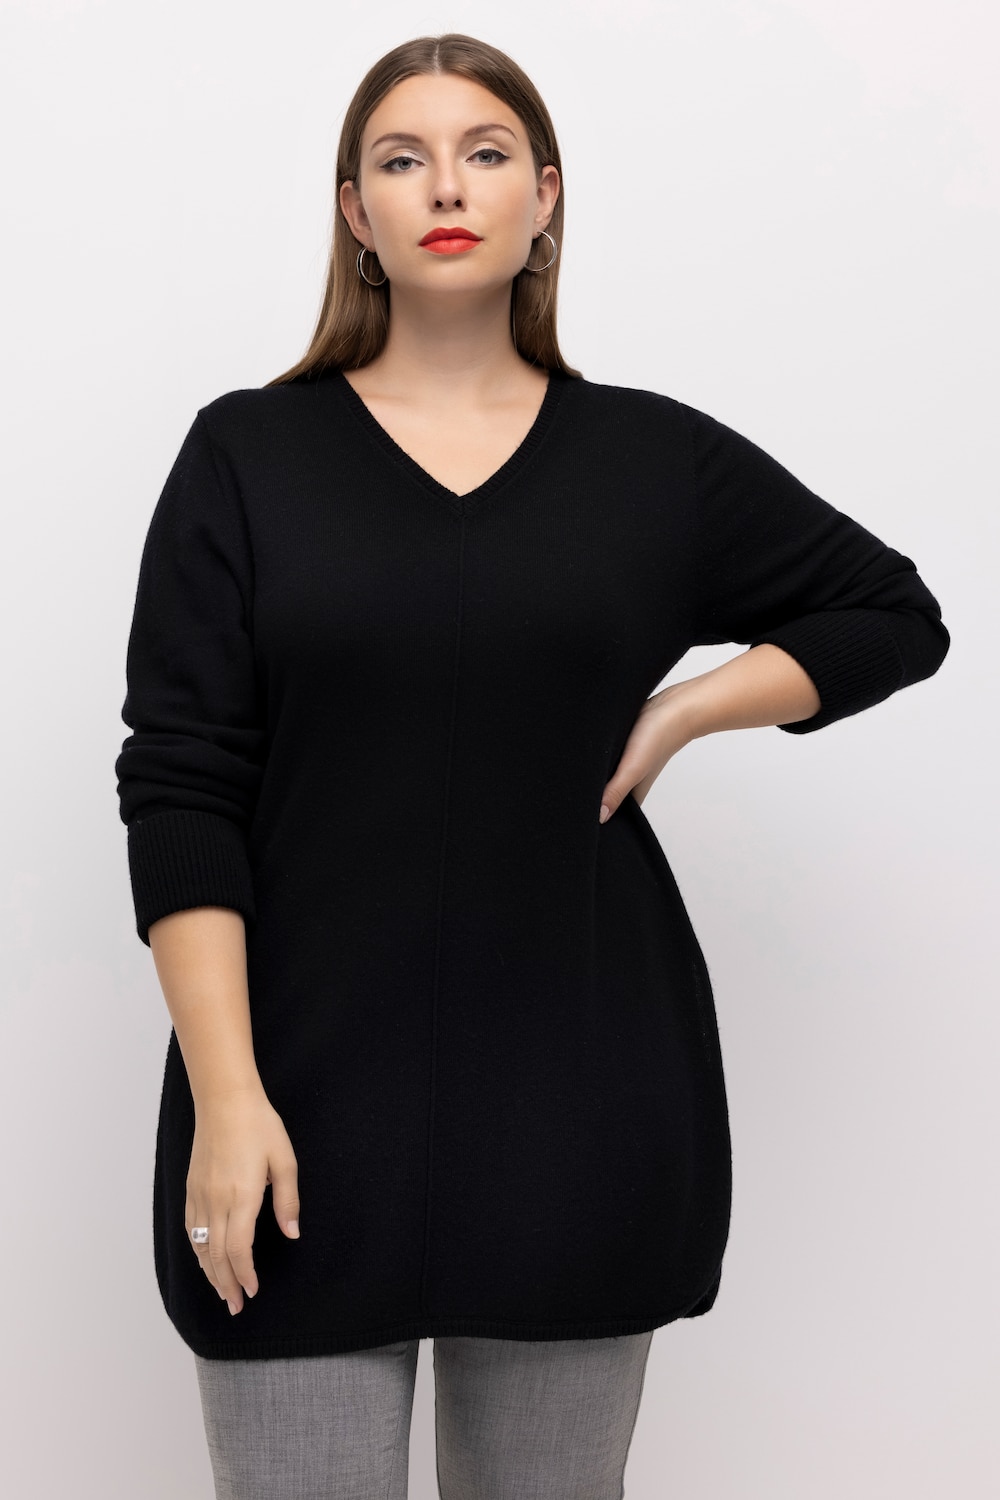 Große Größen Pullover, Damen, schwarz, Größe: 50/52, Wolle, Ulla Popken von Ulla Popken